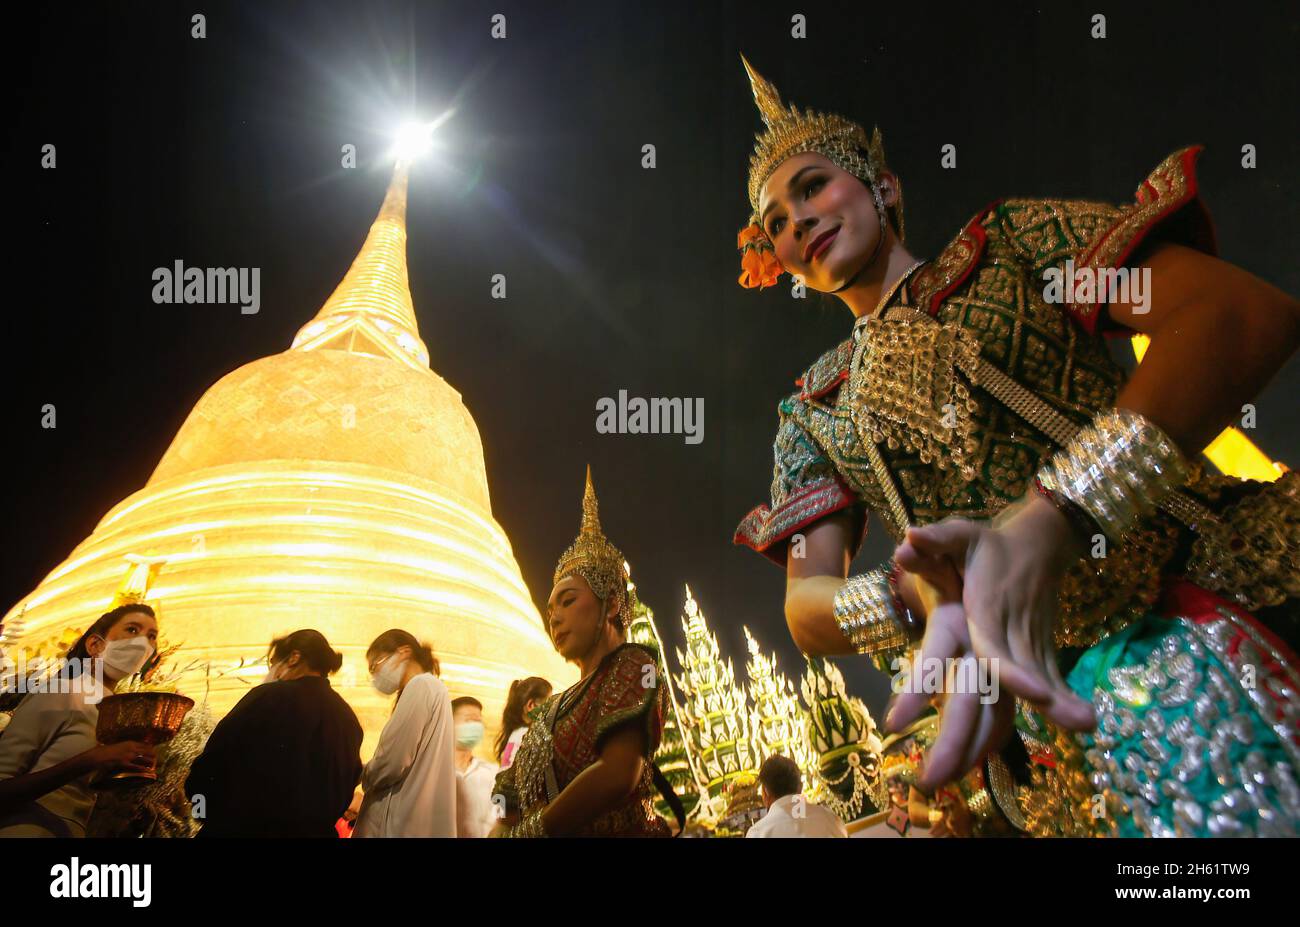 Eine Tänzerin tritt vor dem Tempel Wat Saket auf, der während des Tempels auch als Goldener Berg bekannt ist und den goldenen Berg mit rotem Tuch umwickelt. Eifrige Anhänger versammelten sich, um den Chedi des Goldenen Berges mit einem heiligen roten Tuch zu umwickeln, was den Beginn des Wat Saket-Festivals markierte. Bevor sich die Gläubigen zu einer multikulturellen Parade anstellten, die aus Löwentänzern, traditionellen thailändischen Tänzern, Studenten der Tempelschule und spirituellen Brahmanen bestand. Namen von Familien und Angehörigen wurden in der Hoffnung, Glück und Segen zu sichern, auf das über hundert Meter lange Gewebe geschrieben. (Foto von Chaiwat Stockfoto